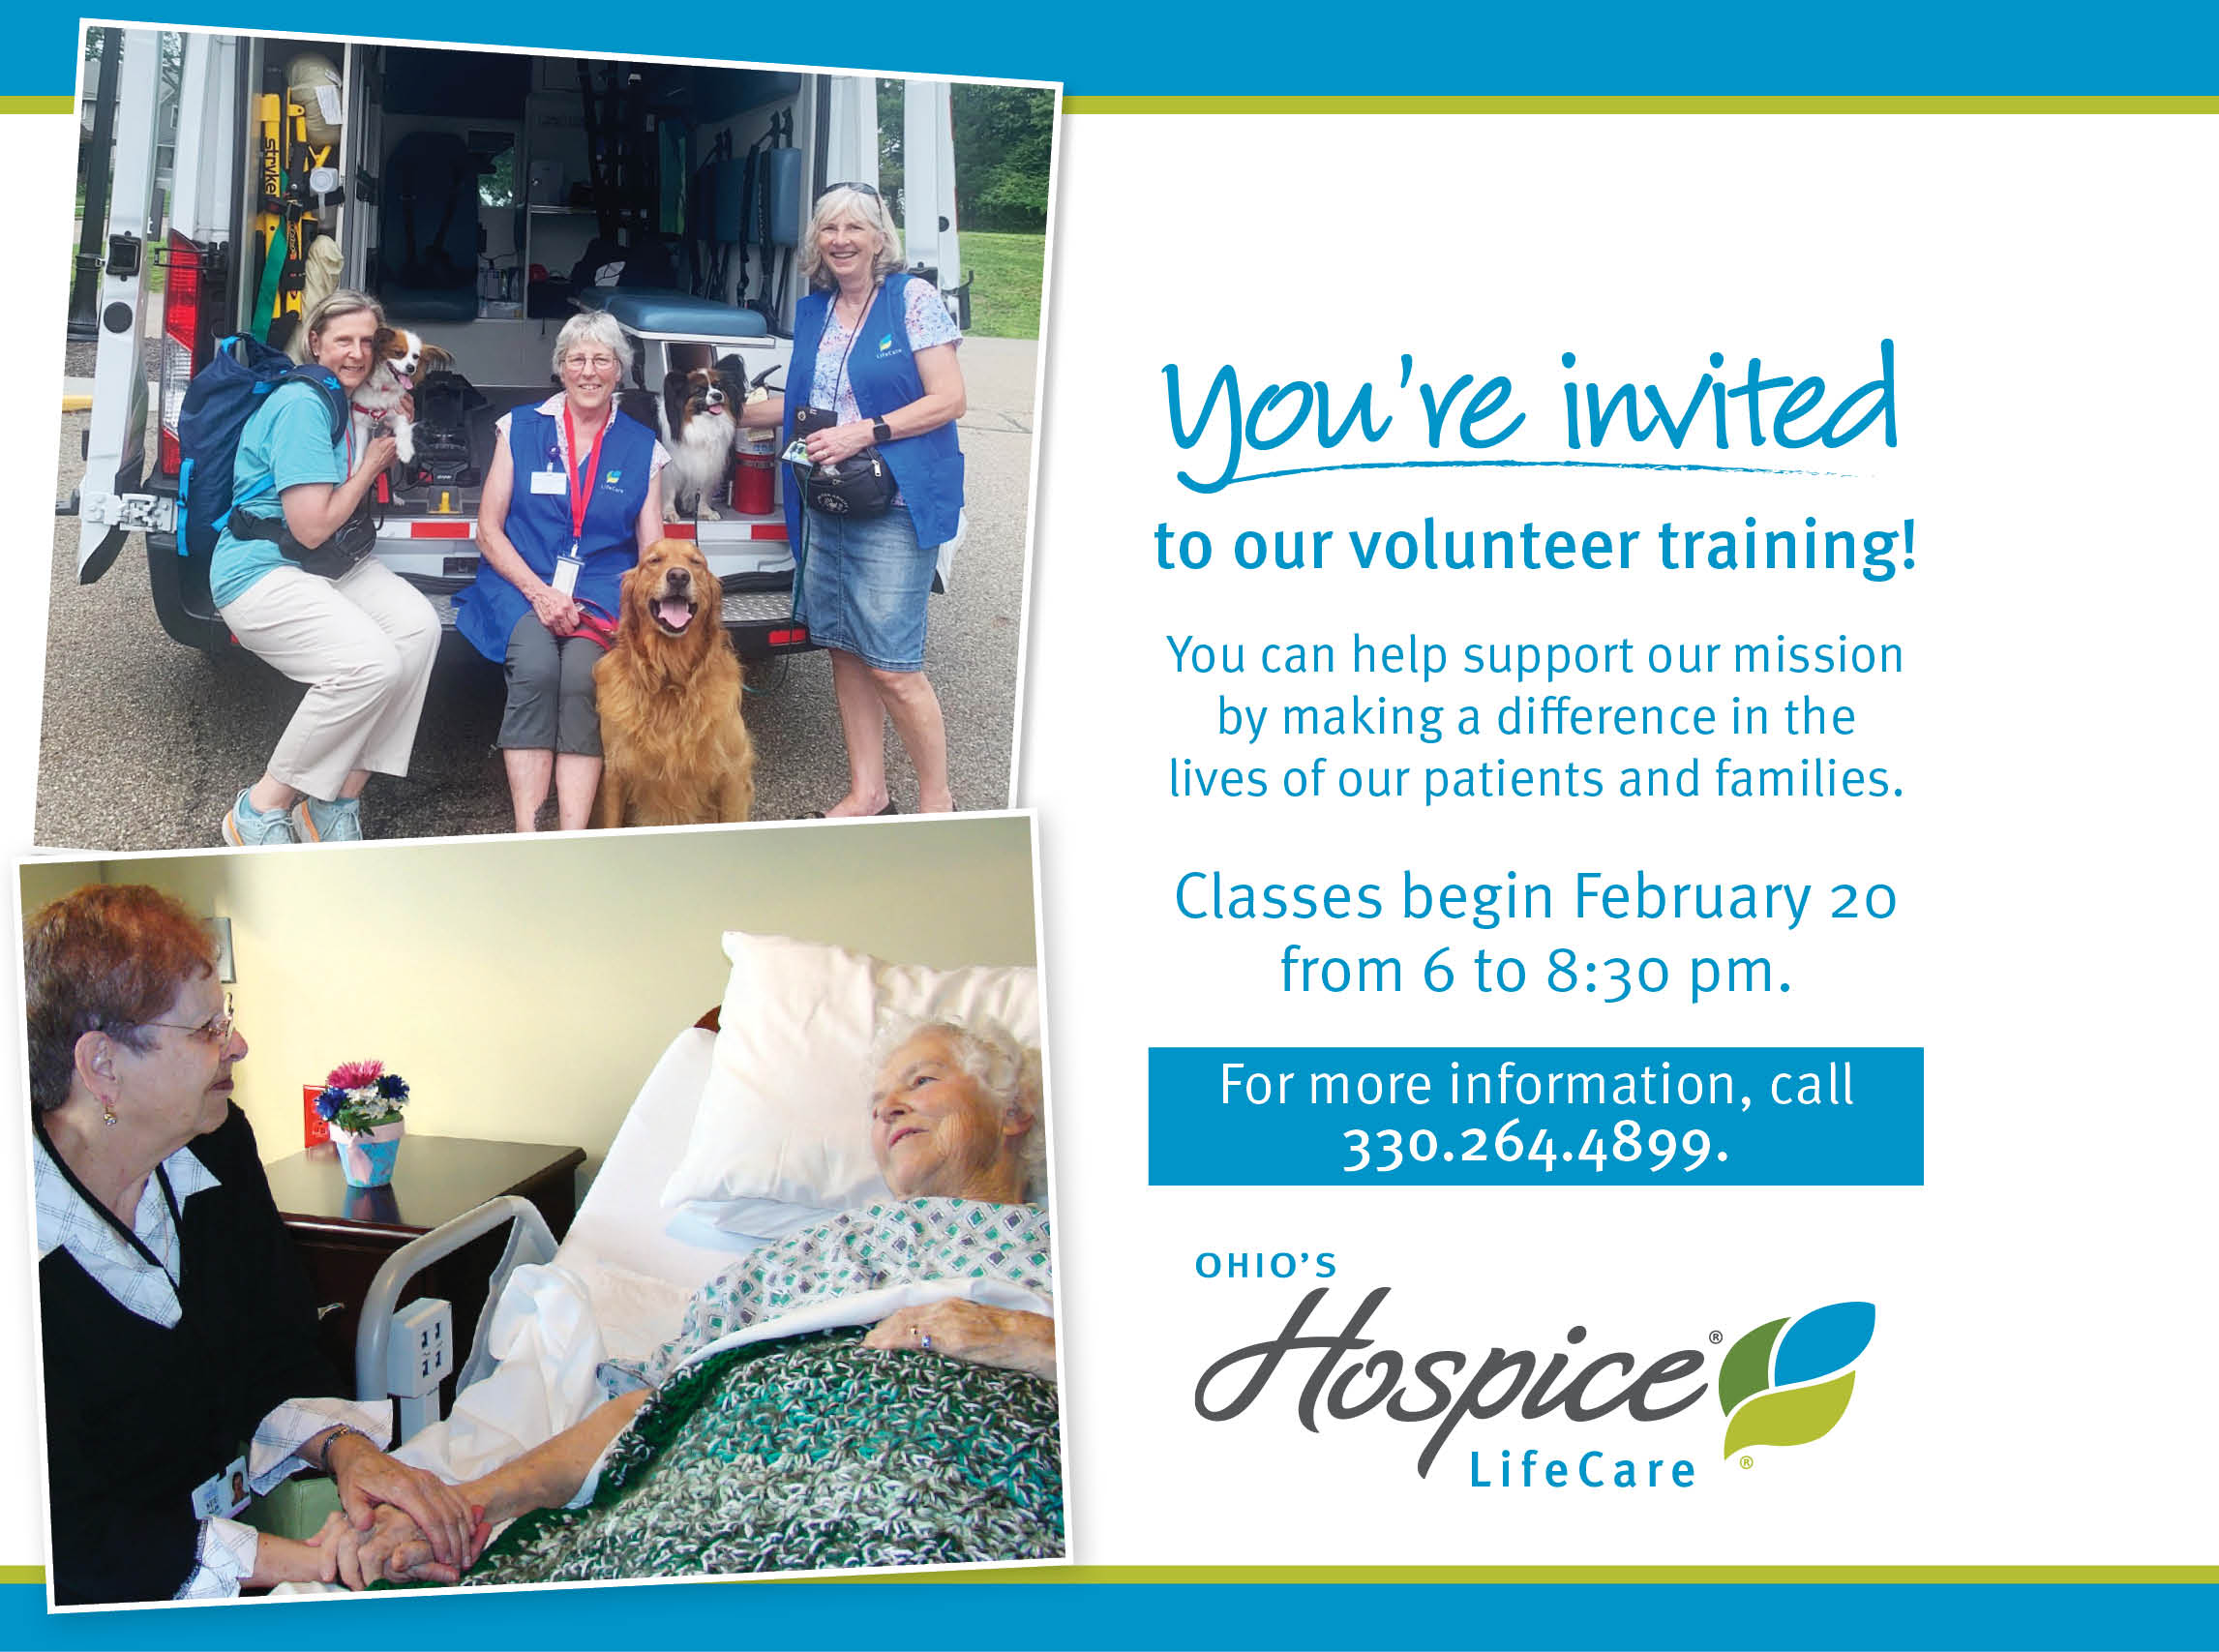 Ohio's Hospice LifeCare volunteer training